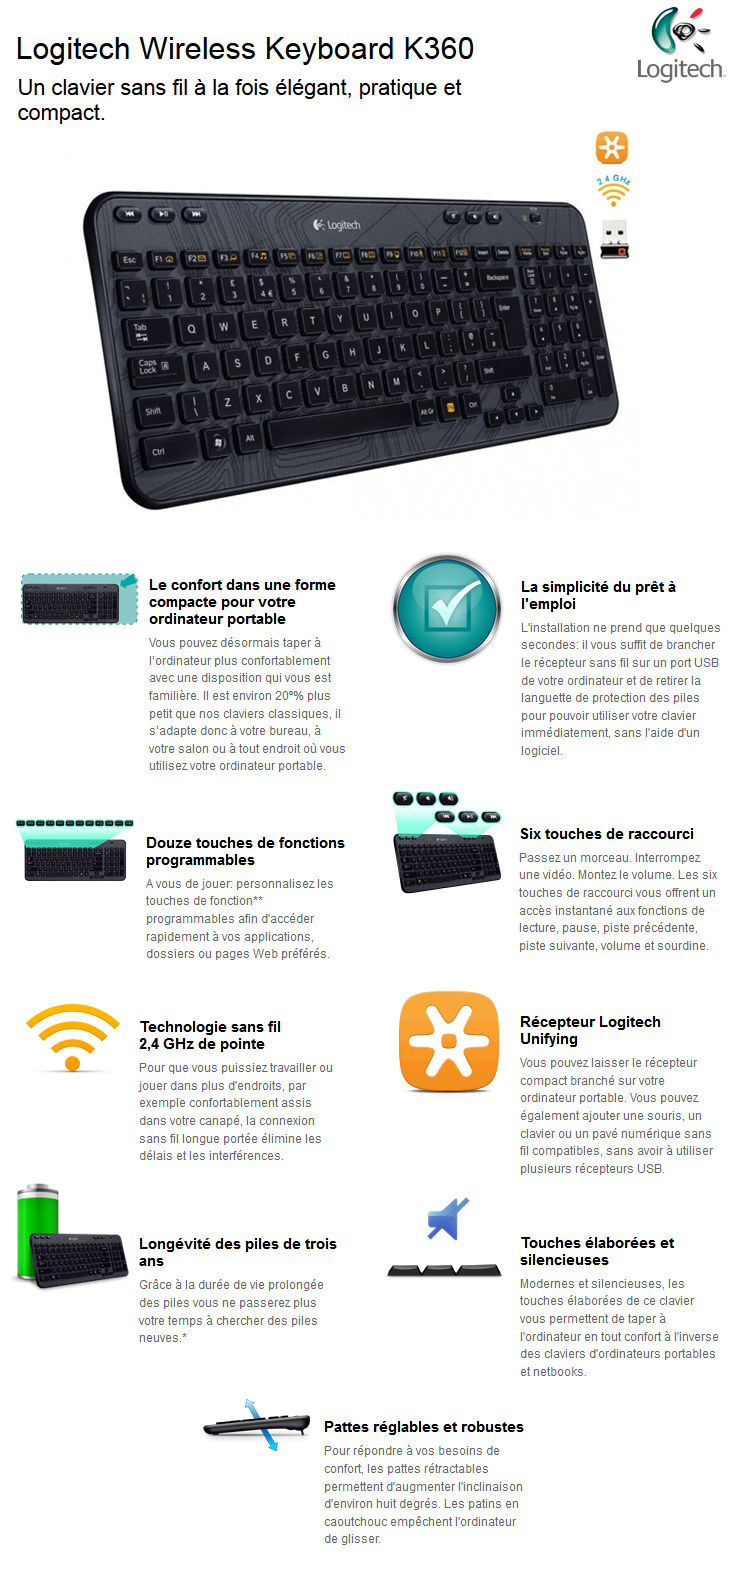 Acheter Logitech Wireless Keyboard K360 maroc